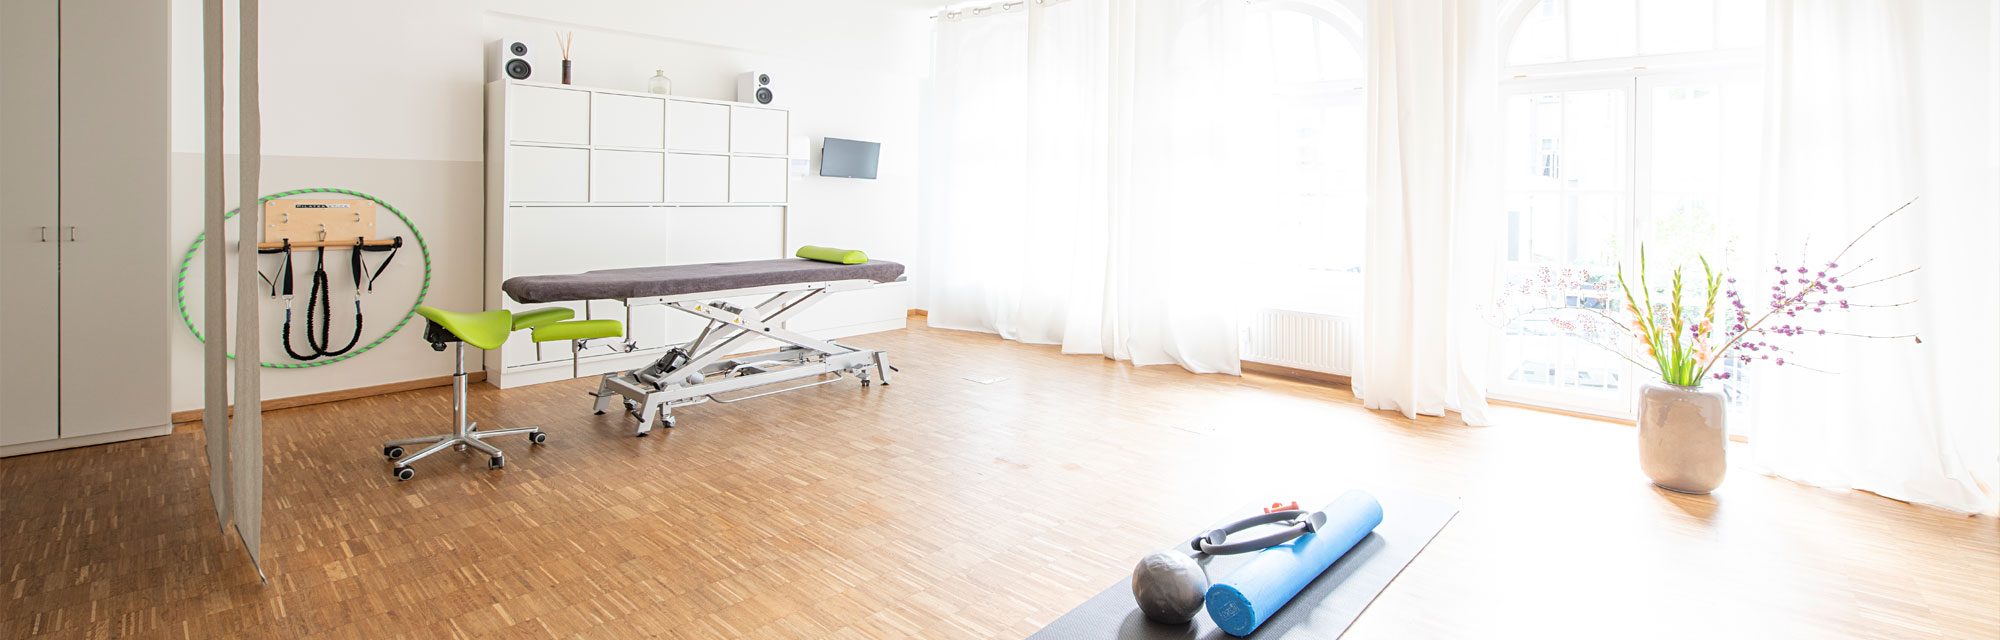 Physiotherapie und Pilates im Hamburger Grindelviertel – Annette Prahm